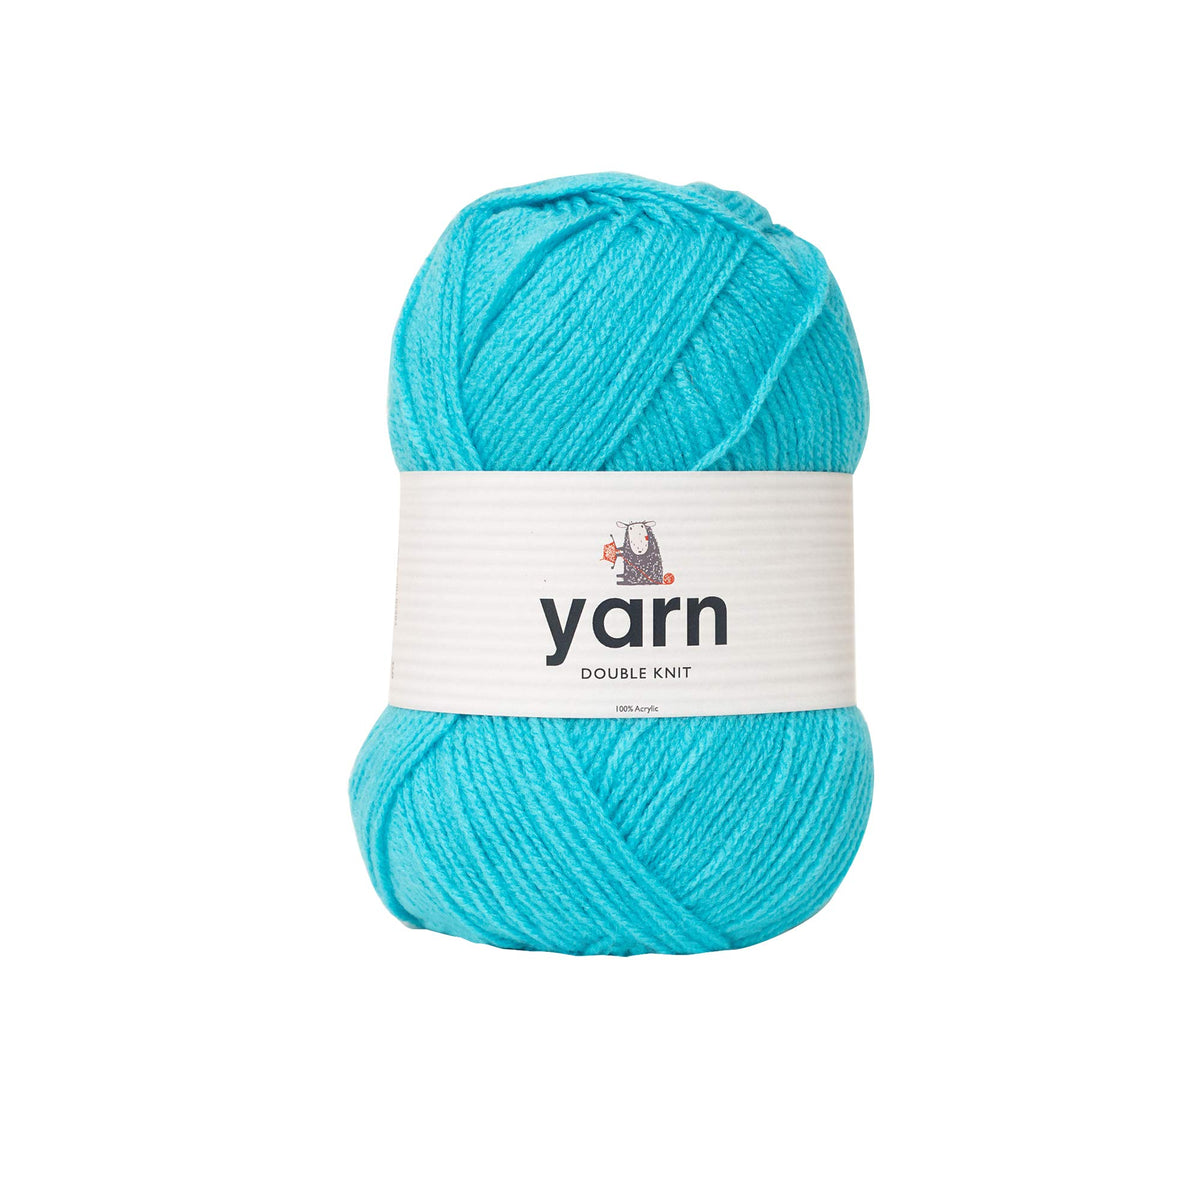 Korbond DK Aqua Yarn - 100g Acrylic Yarn - Lightweight, Hypoallergenic & Durable Yarn (290m Total)